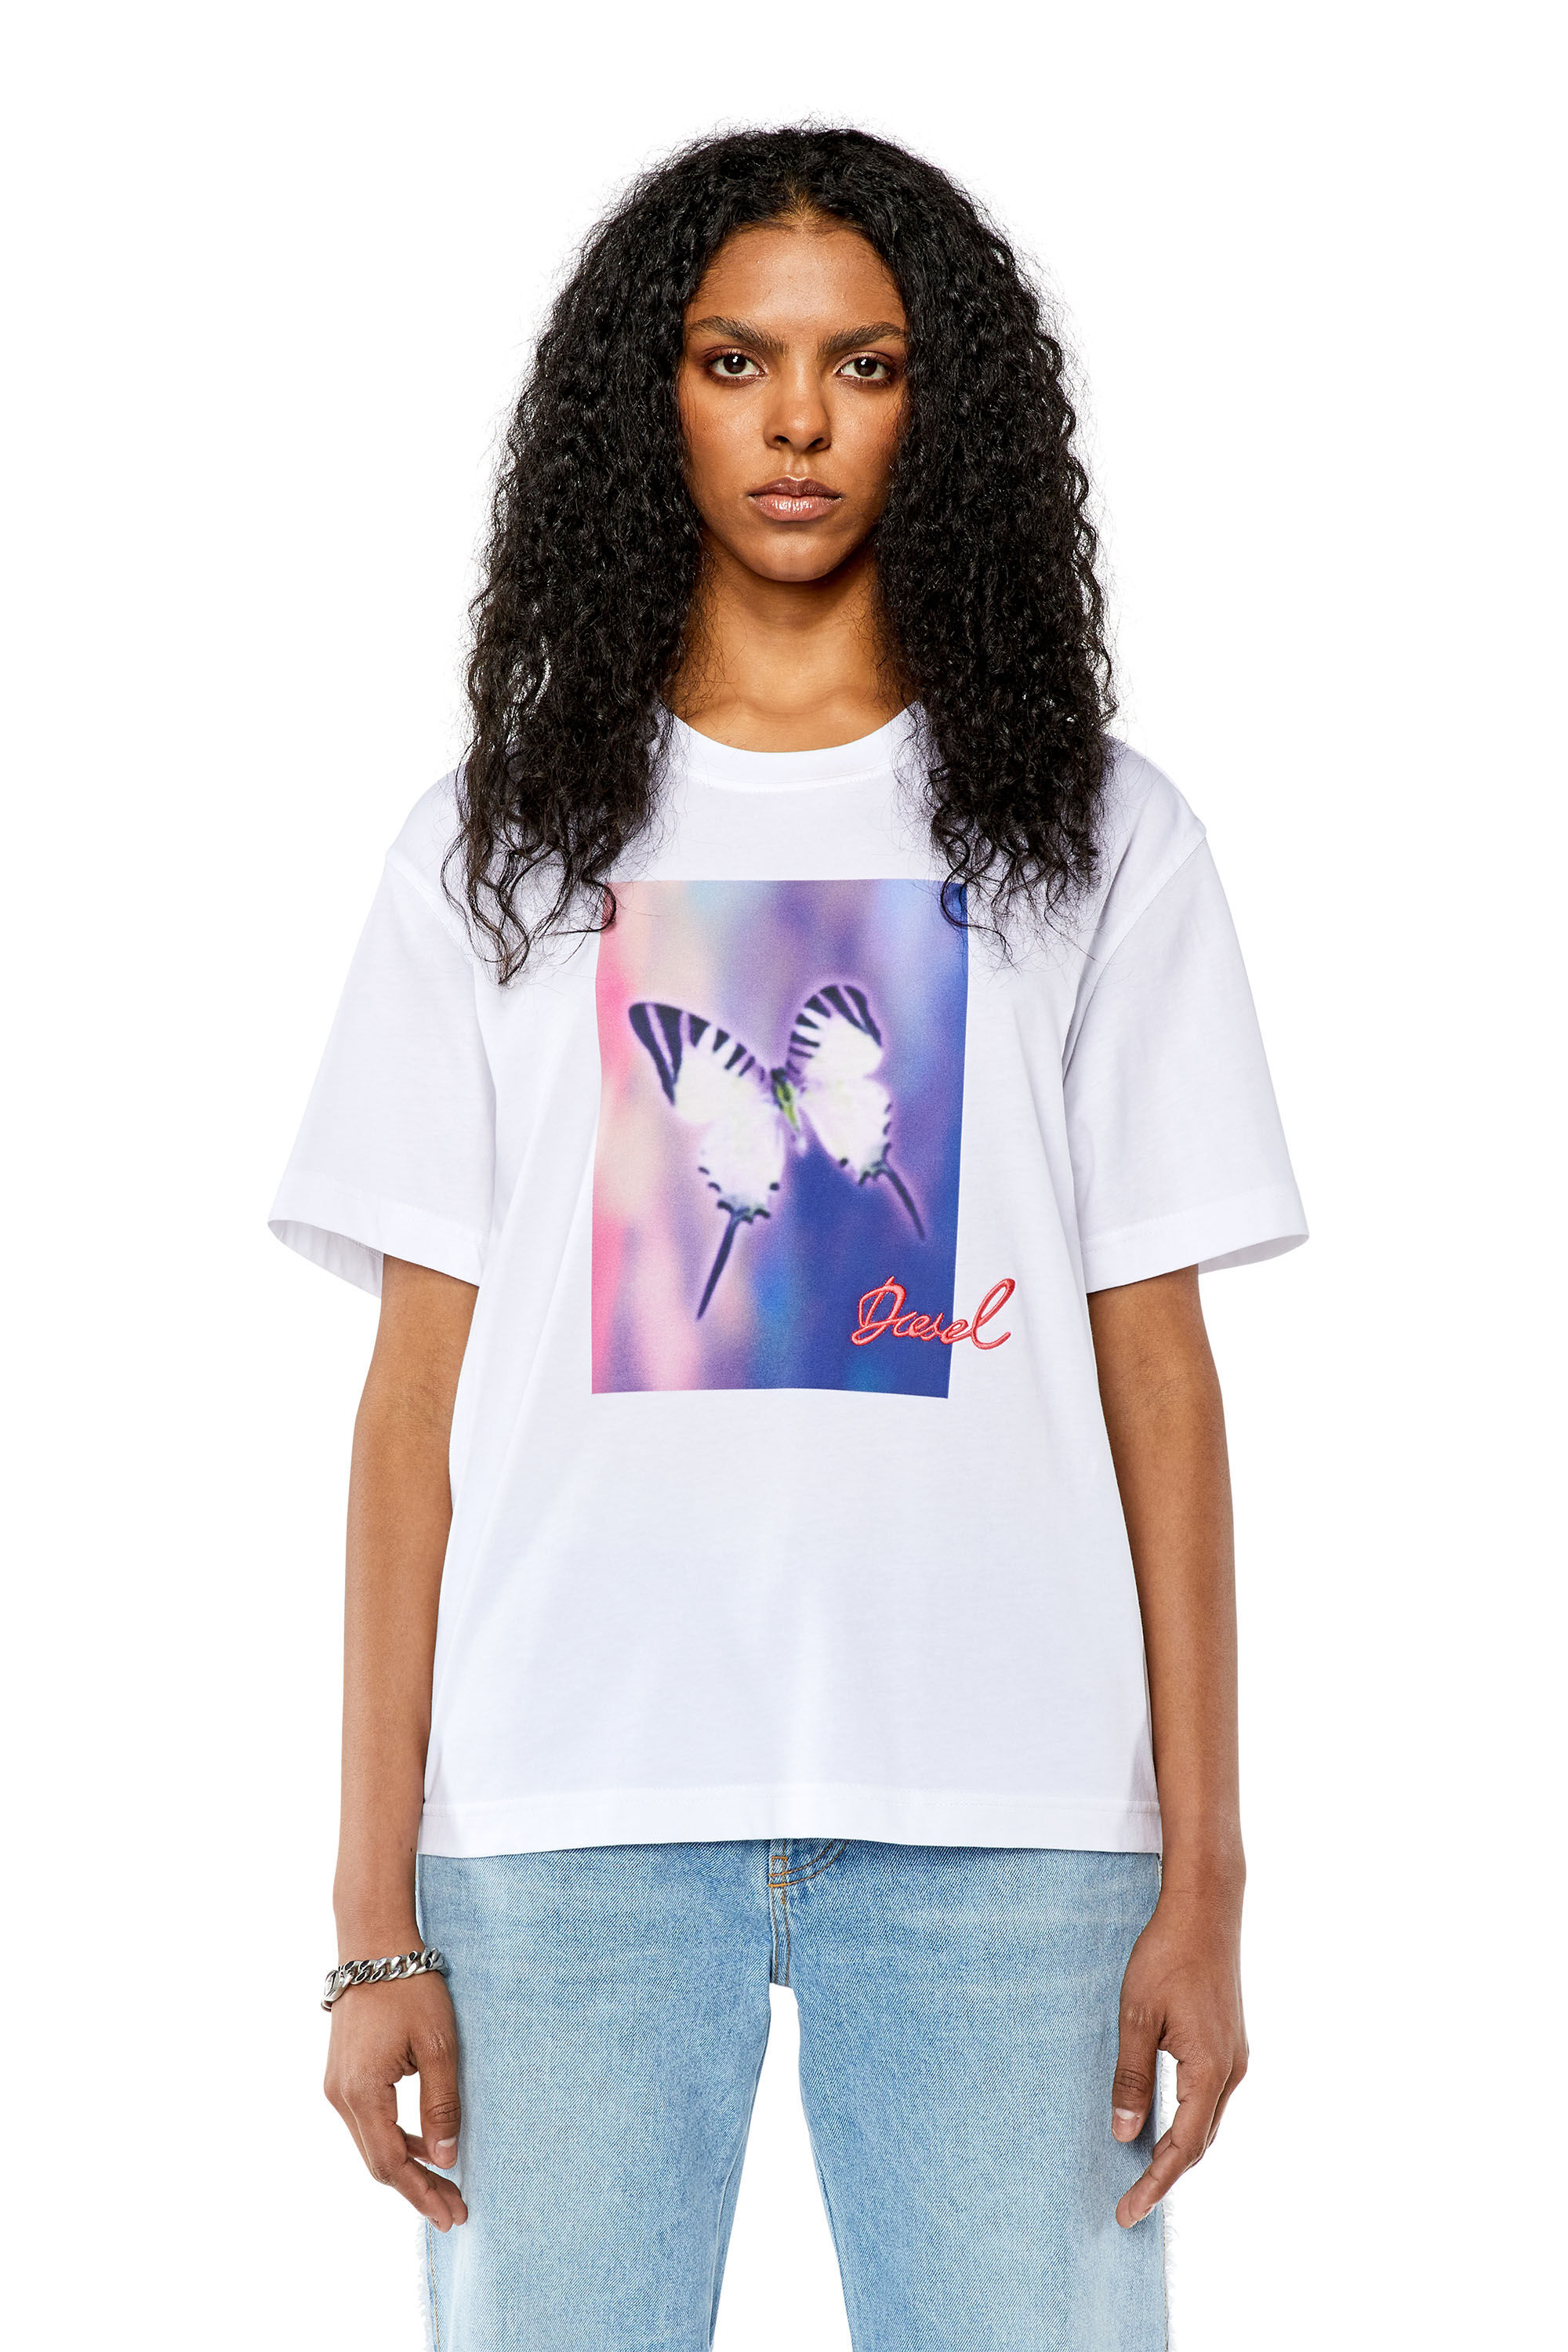 Sada empeorar promoción Camiseta con estampado digital de mariposas Mujer | T-DANNY-L1 Diesel